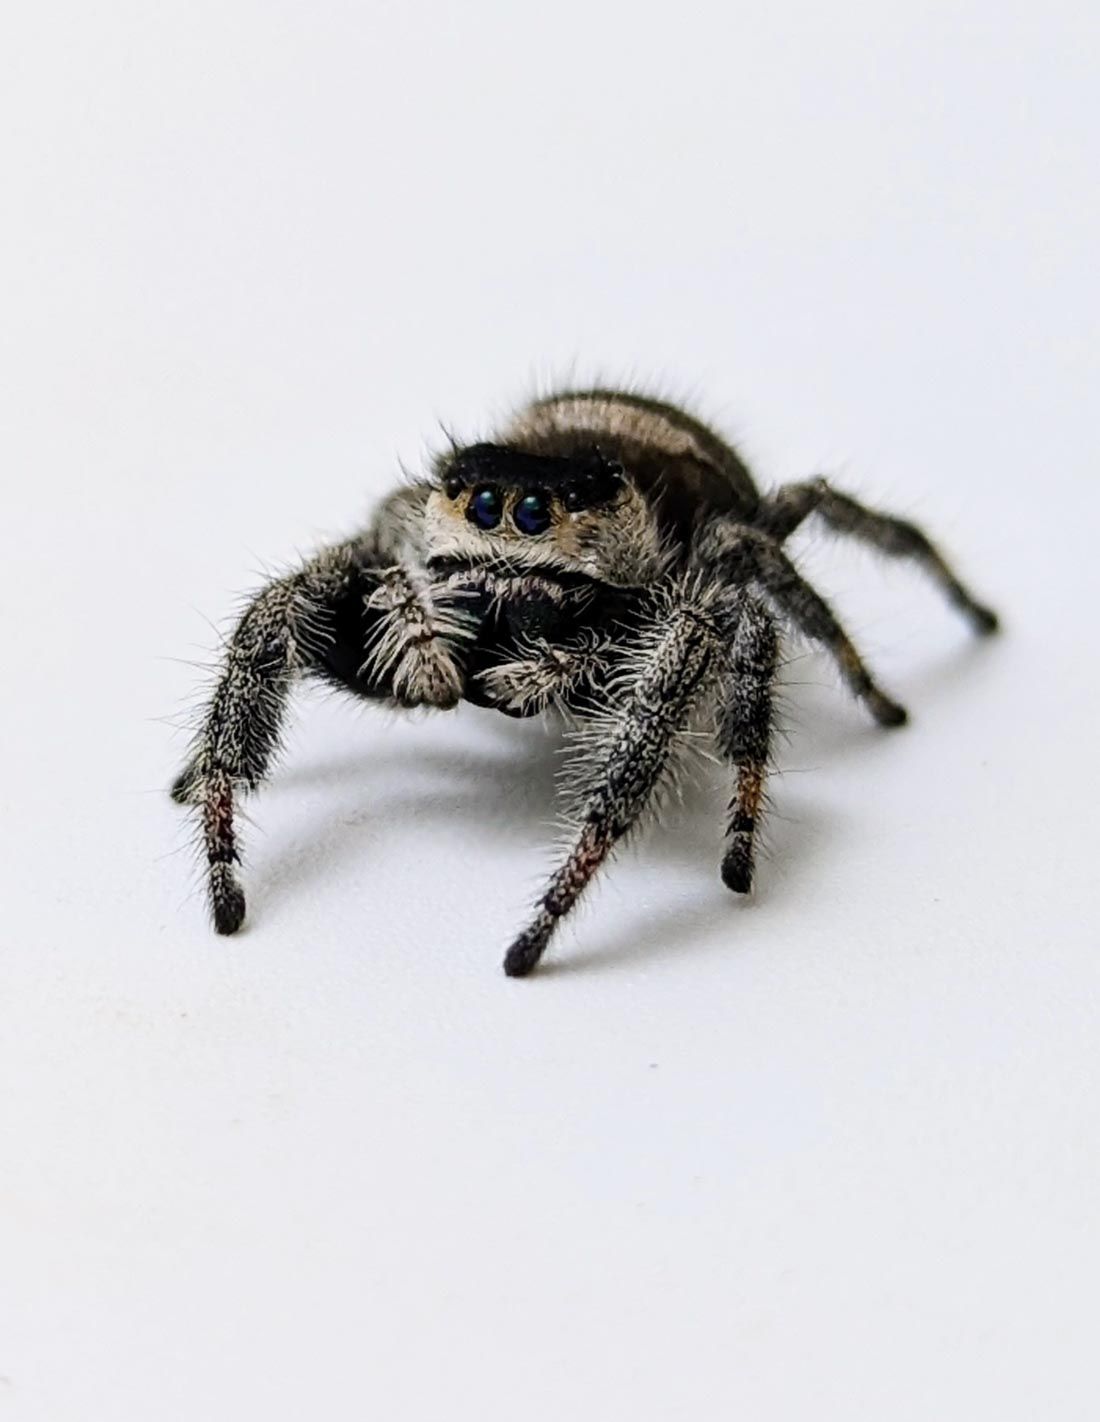 Araignée sauteuse Royale - Phiddipus regius phiddi Florida L5/L6 ♀